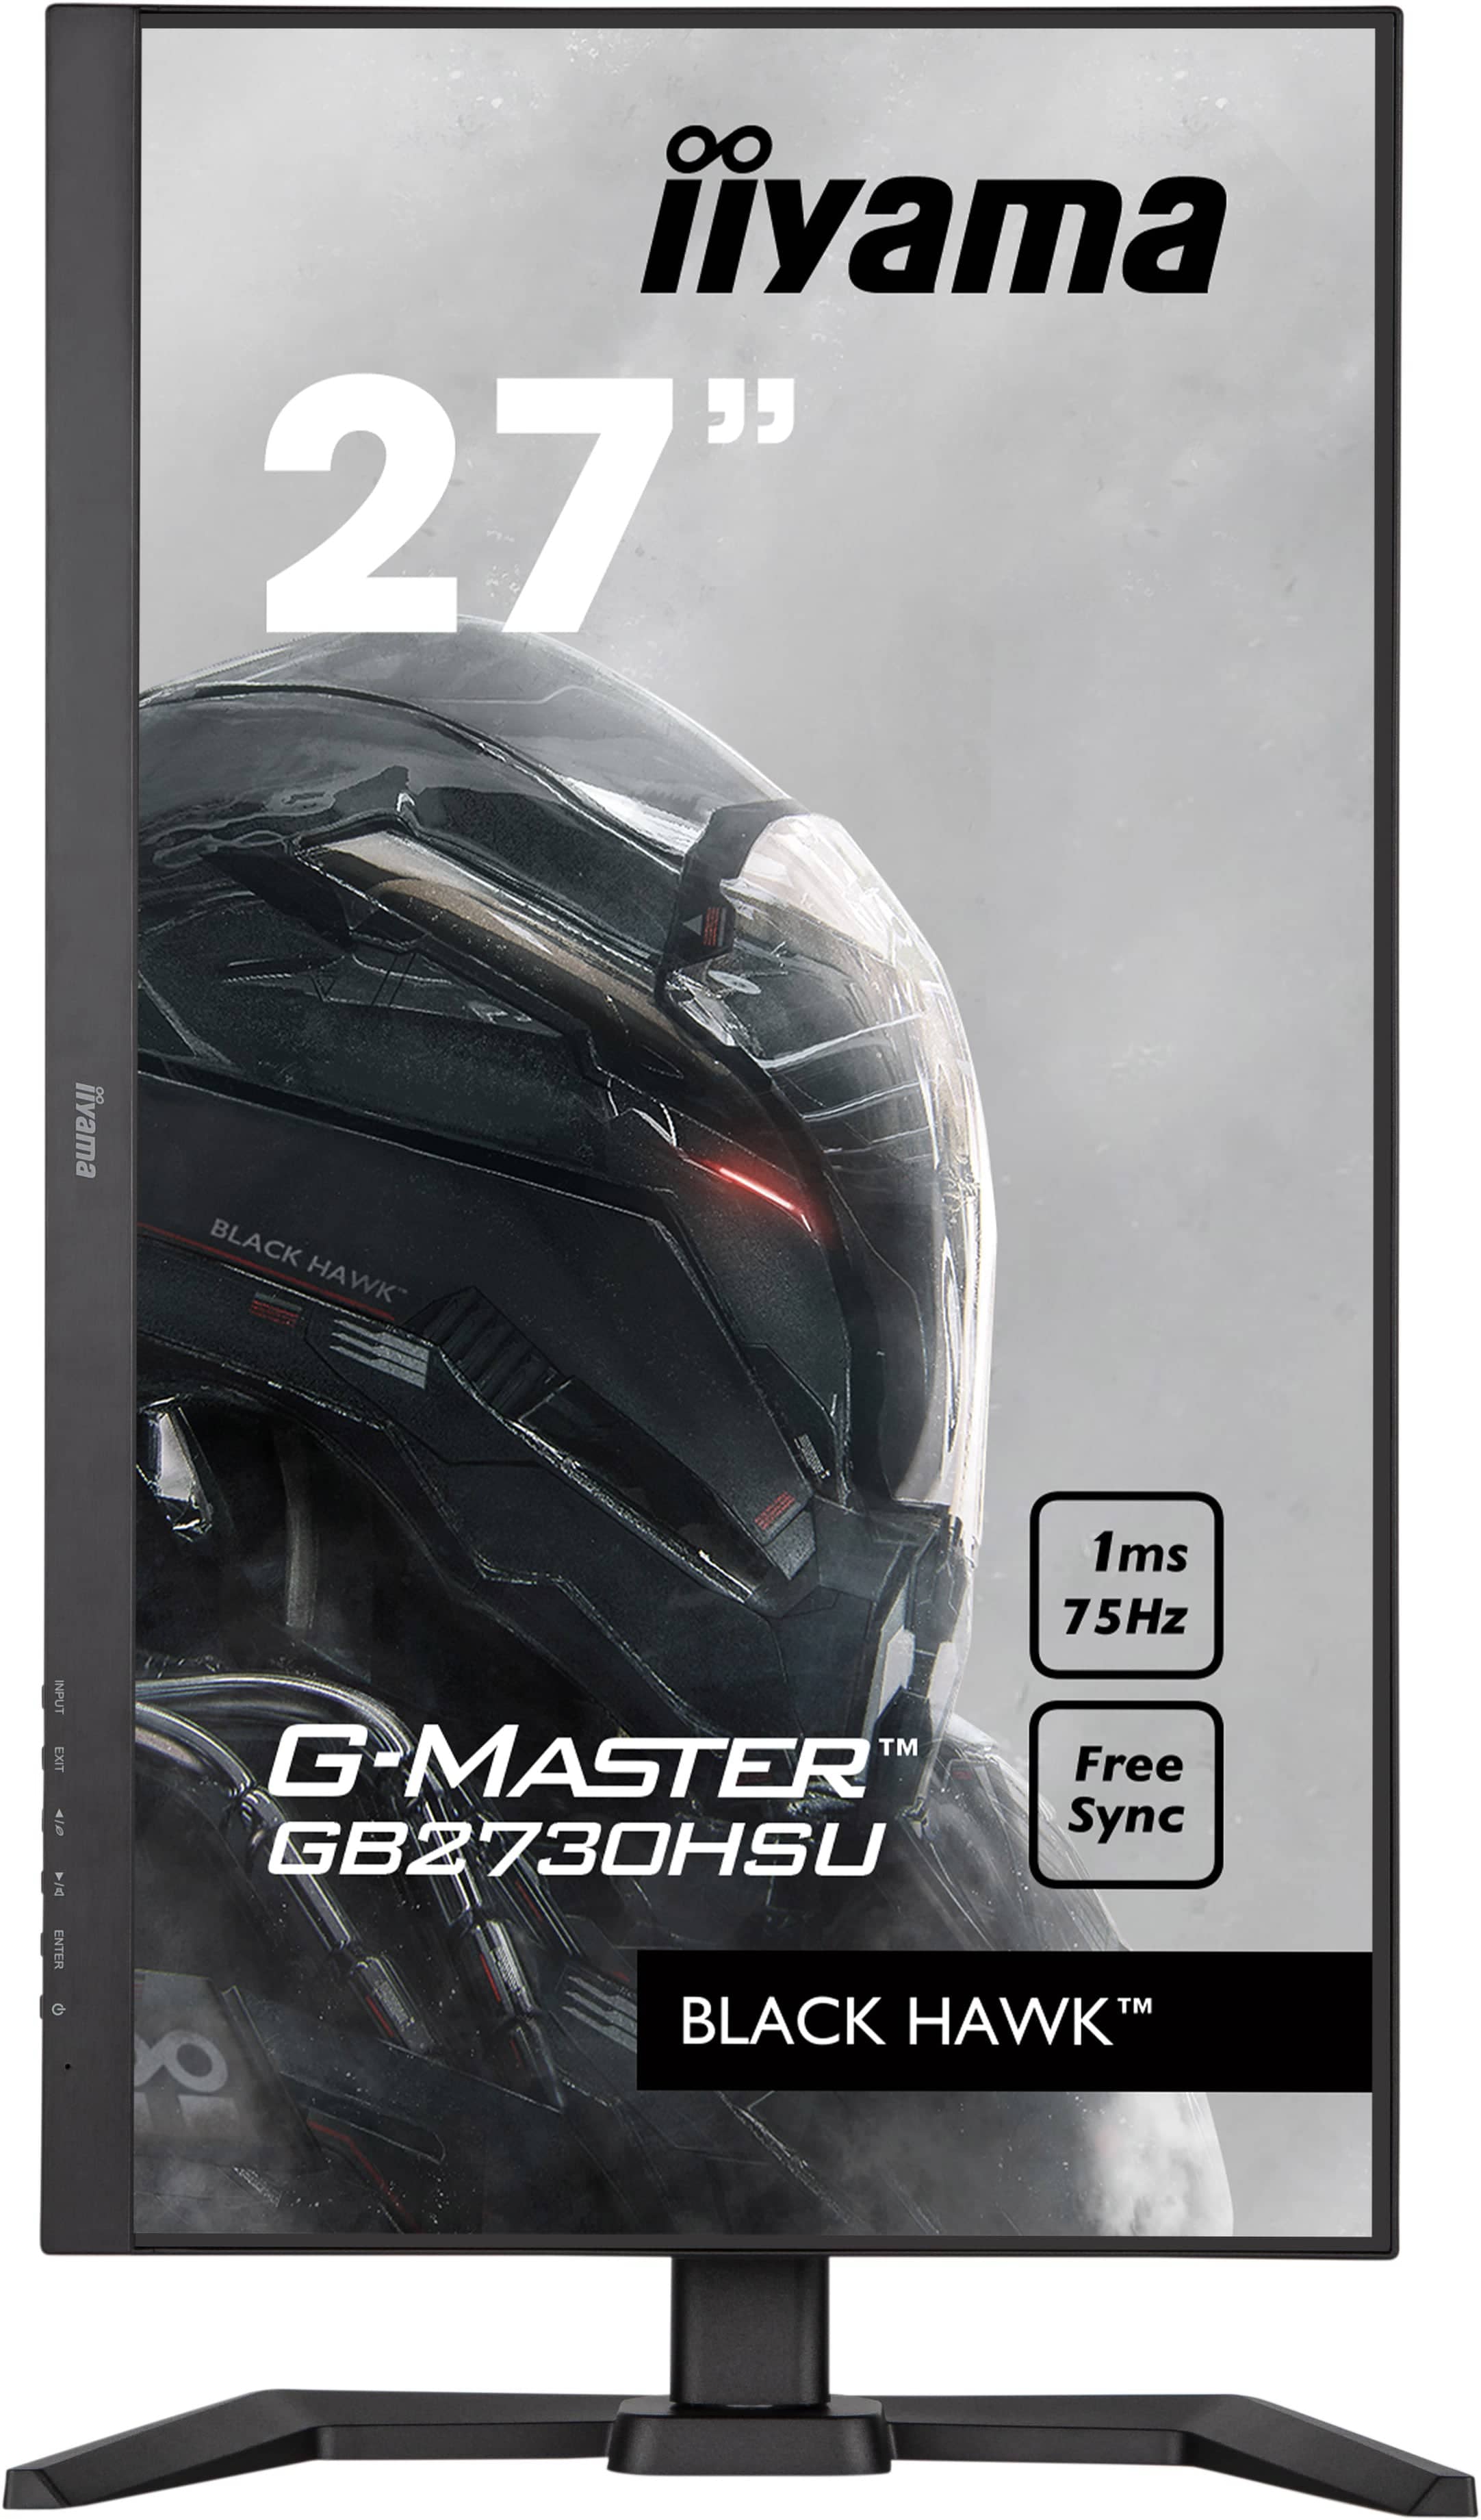 Iiyama G-MASTER GB2730HSU-B5 BLACK HAWK | 27" | 1920 x 1080 | 75Hz | Gaming